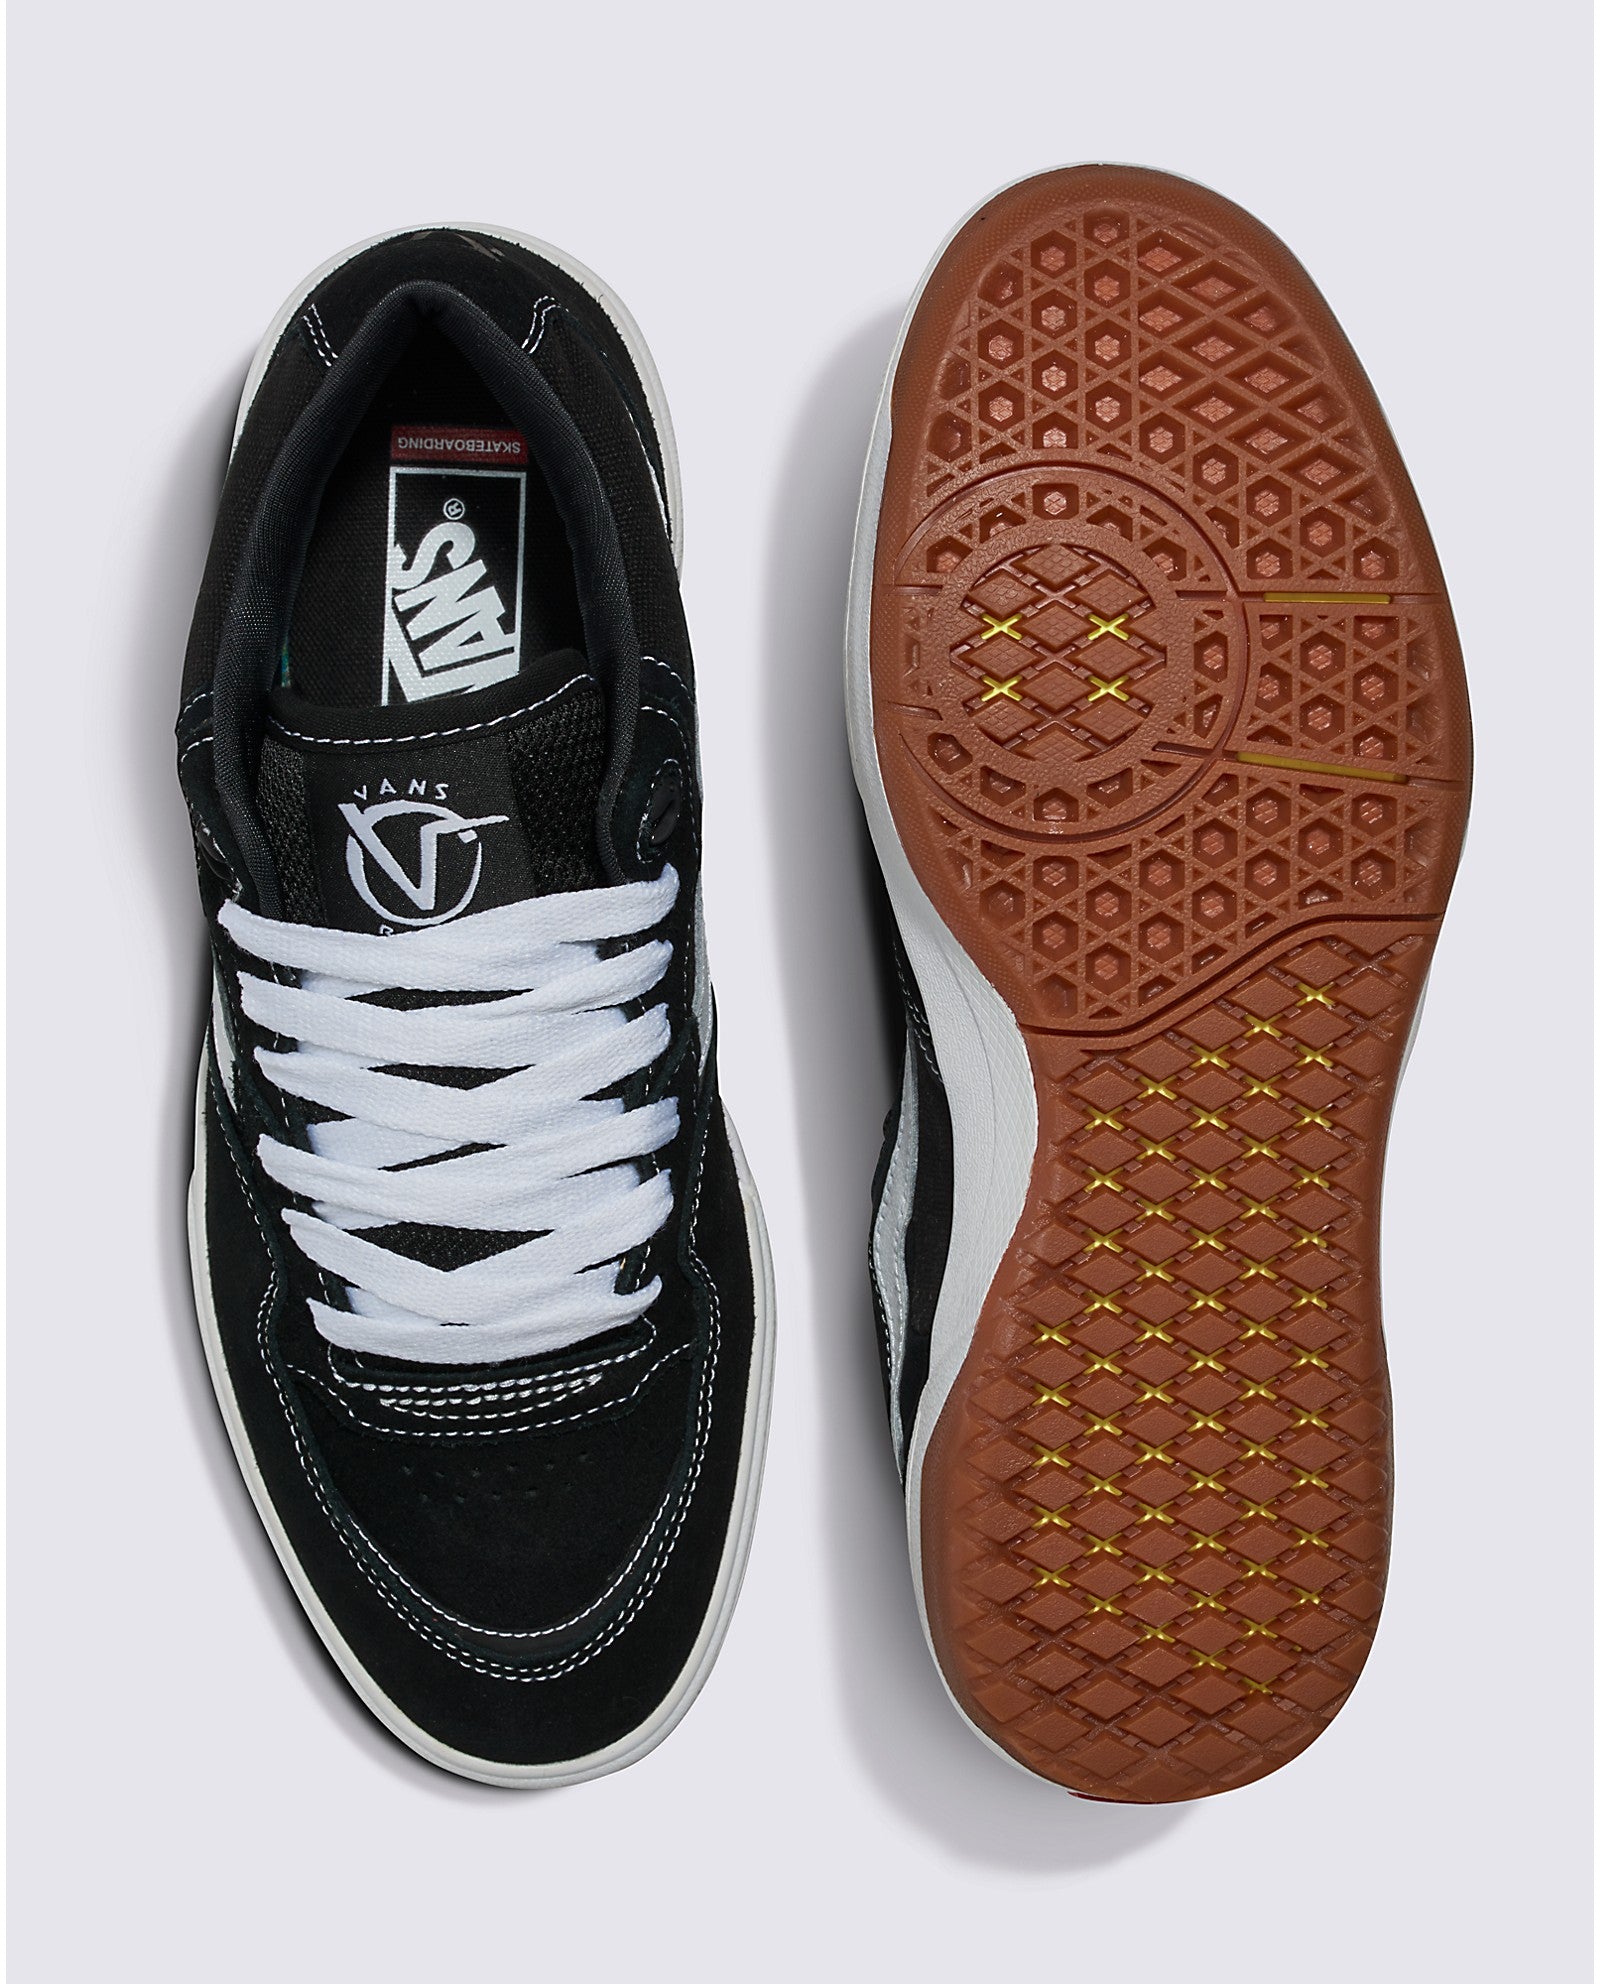 Black/White Rowan 2 Vans Skate Shoe Top/Bottom